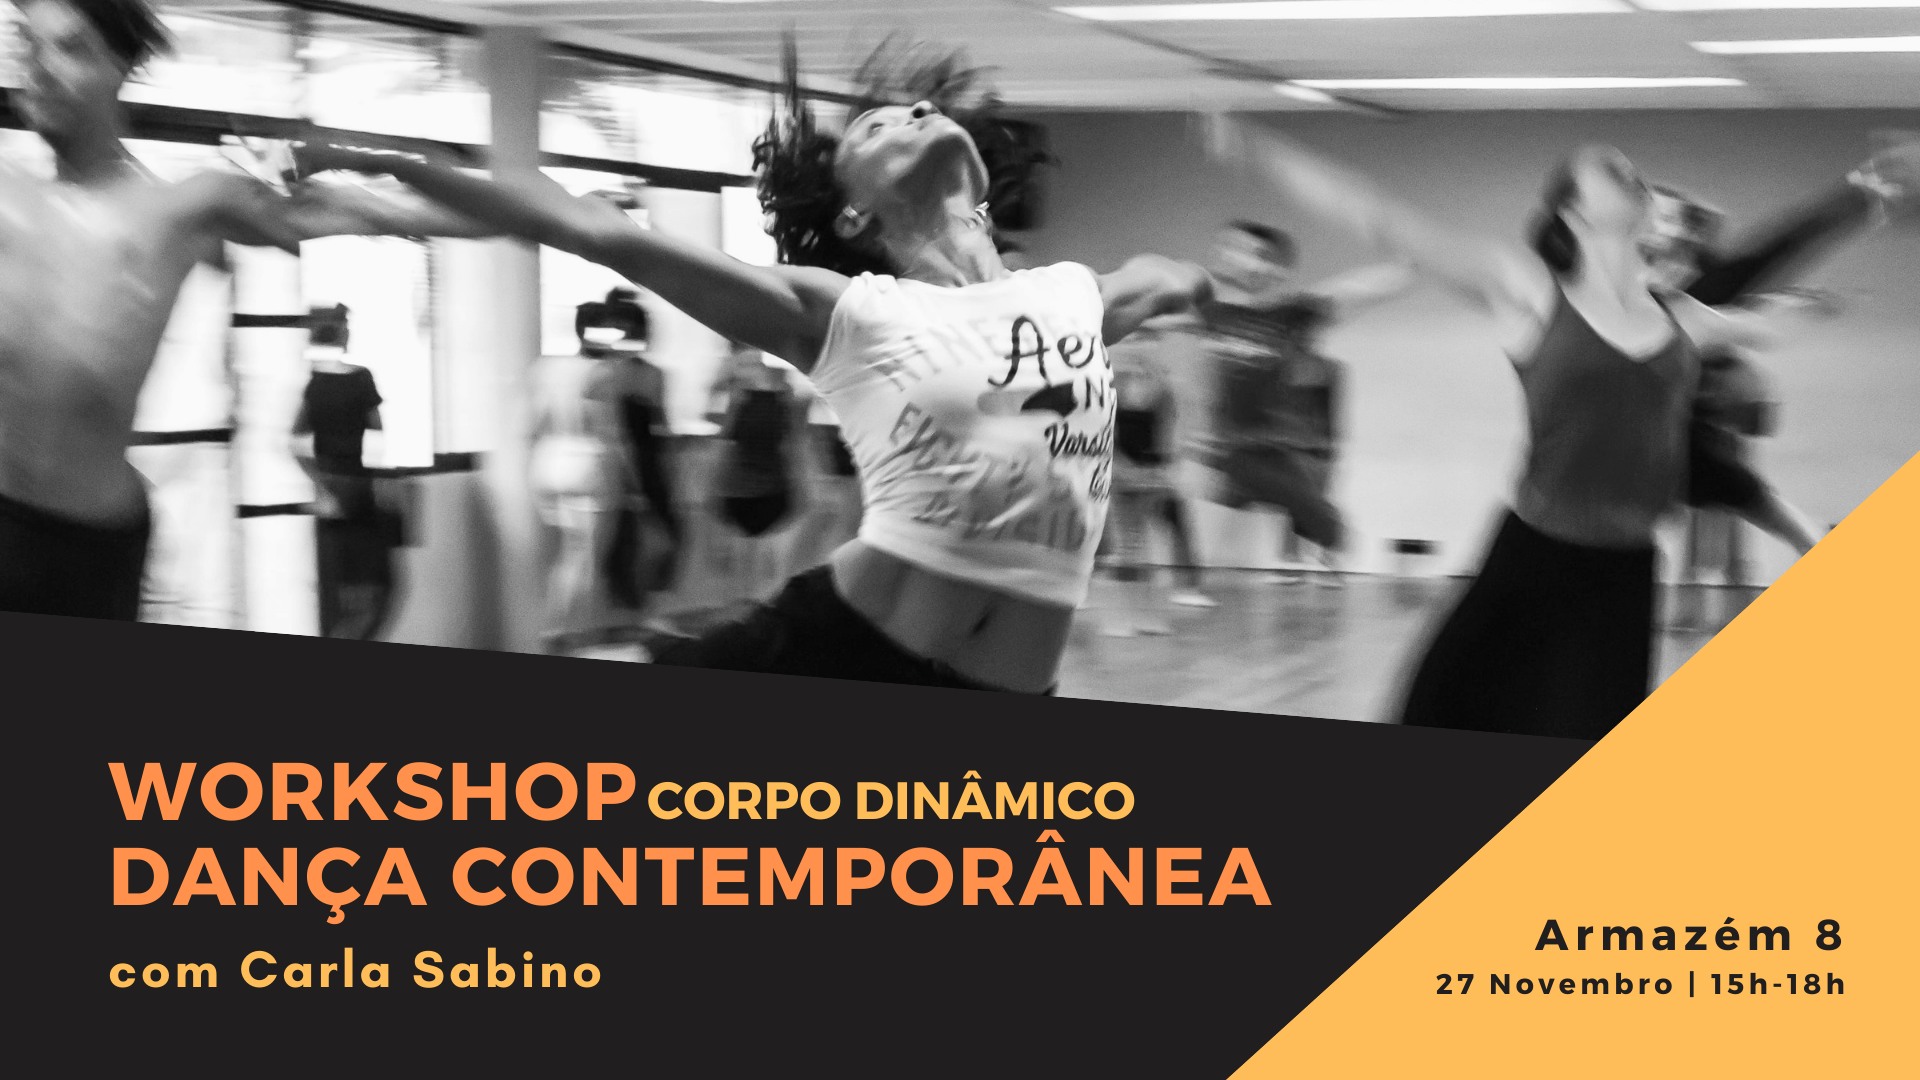 Workshop Dança Contemporânea - Corpo Dinâmico